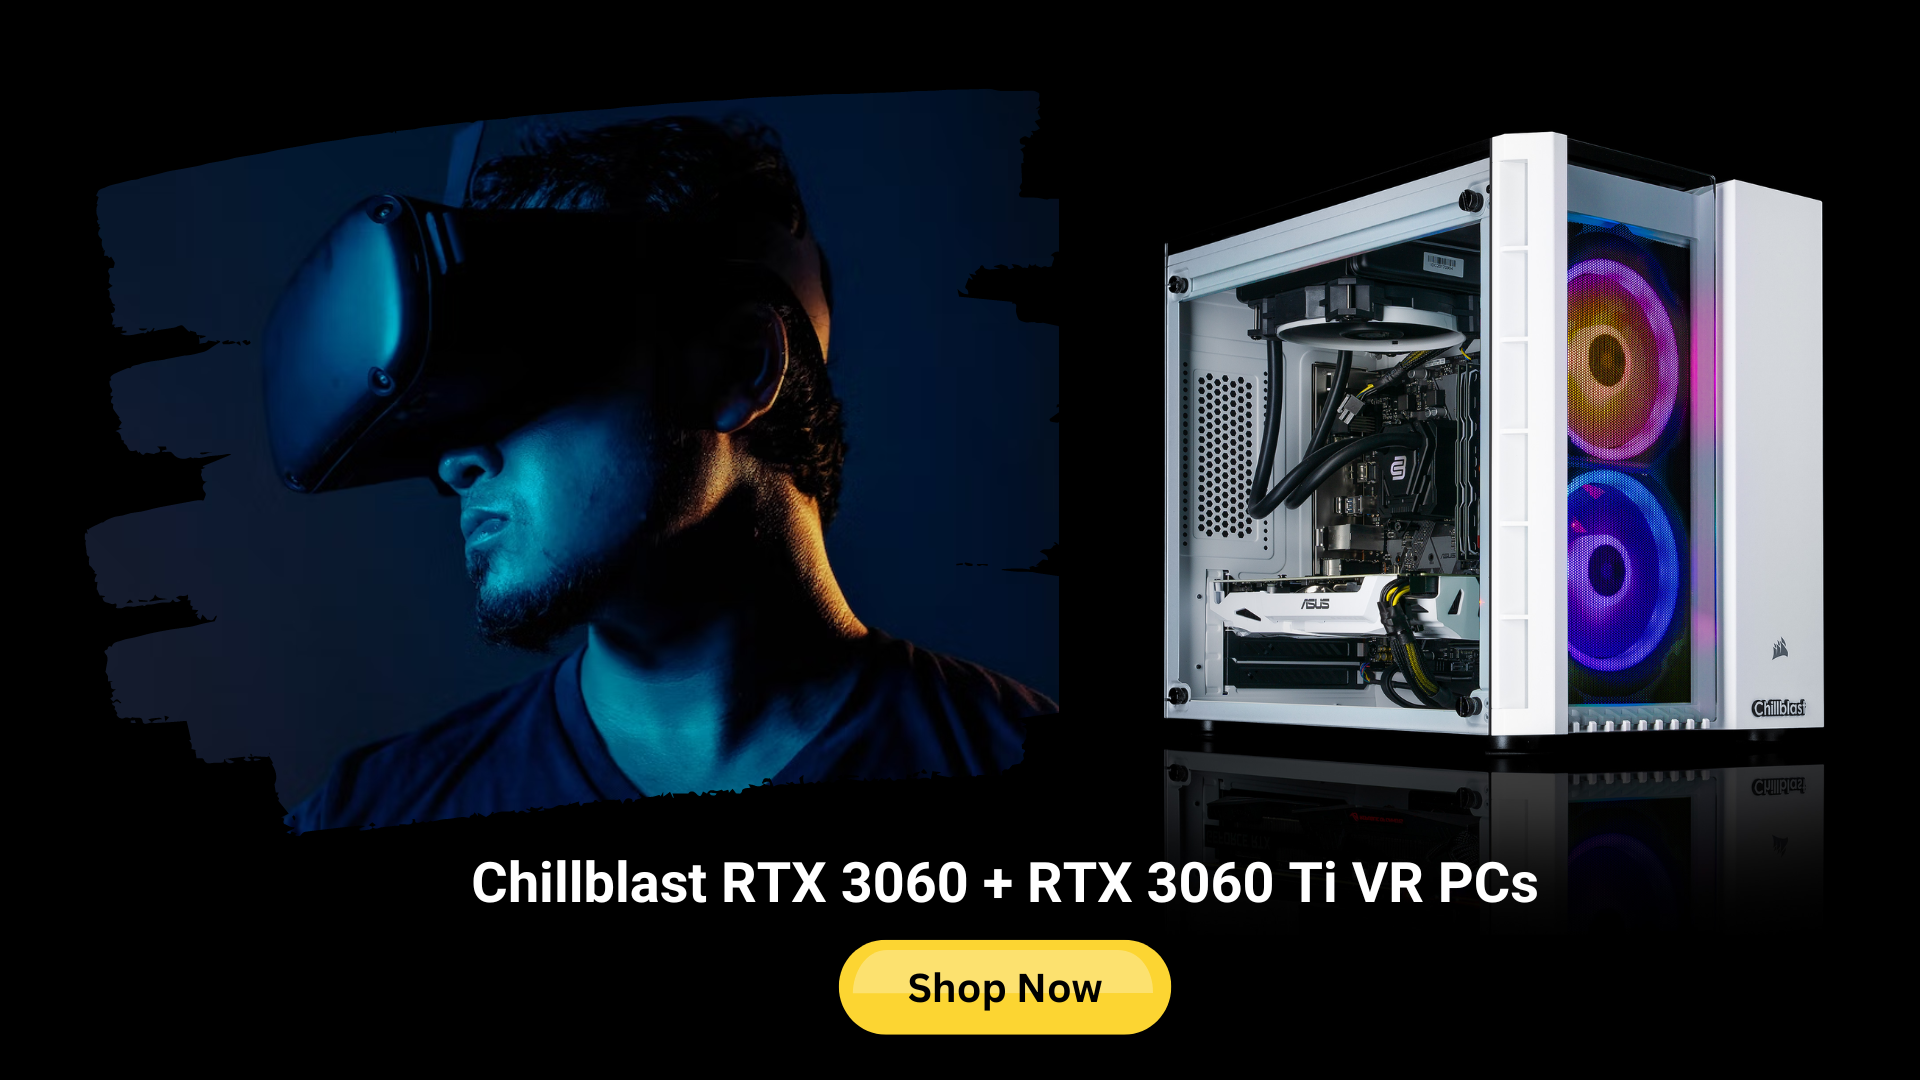 Chillblast RTX 3060 VR Gaming PCs